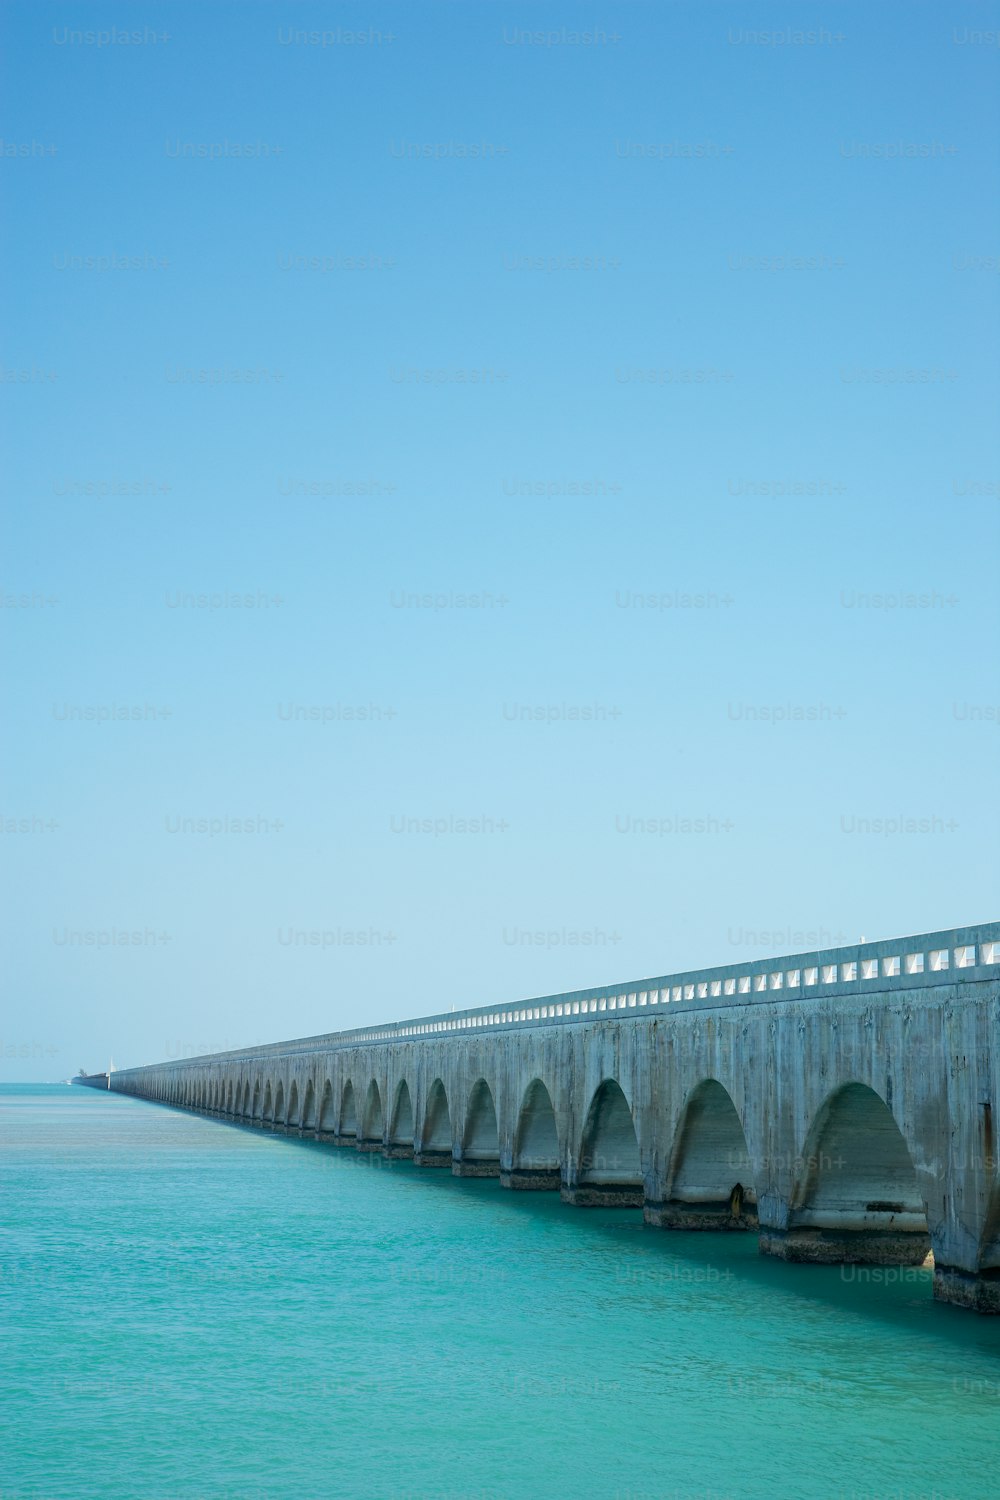 a long concrete bridge over a body of water